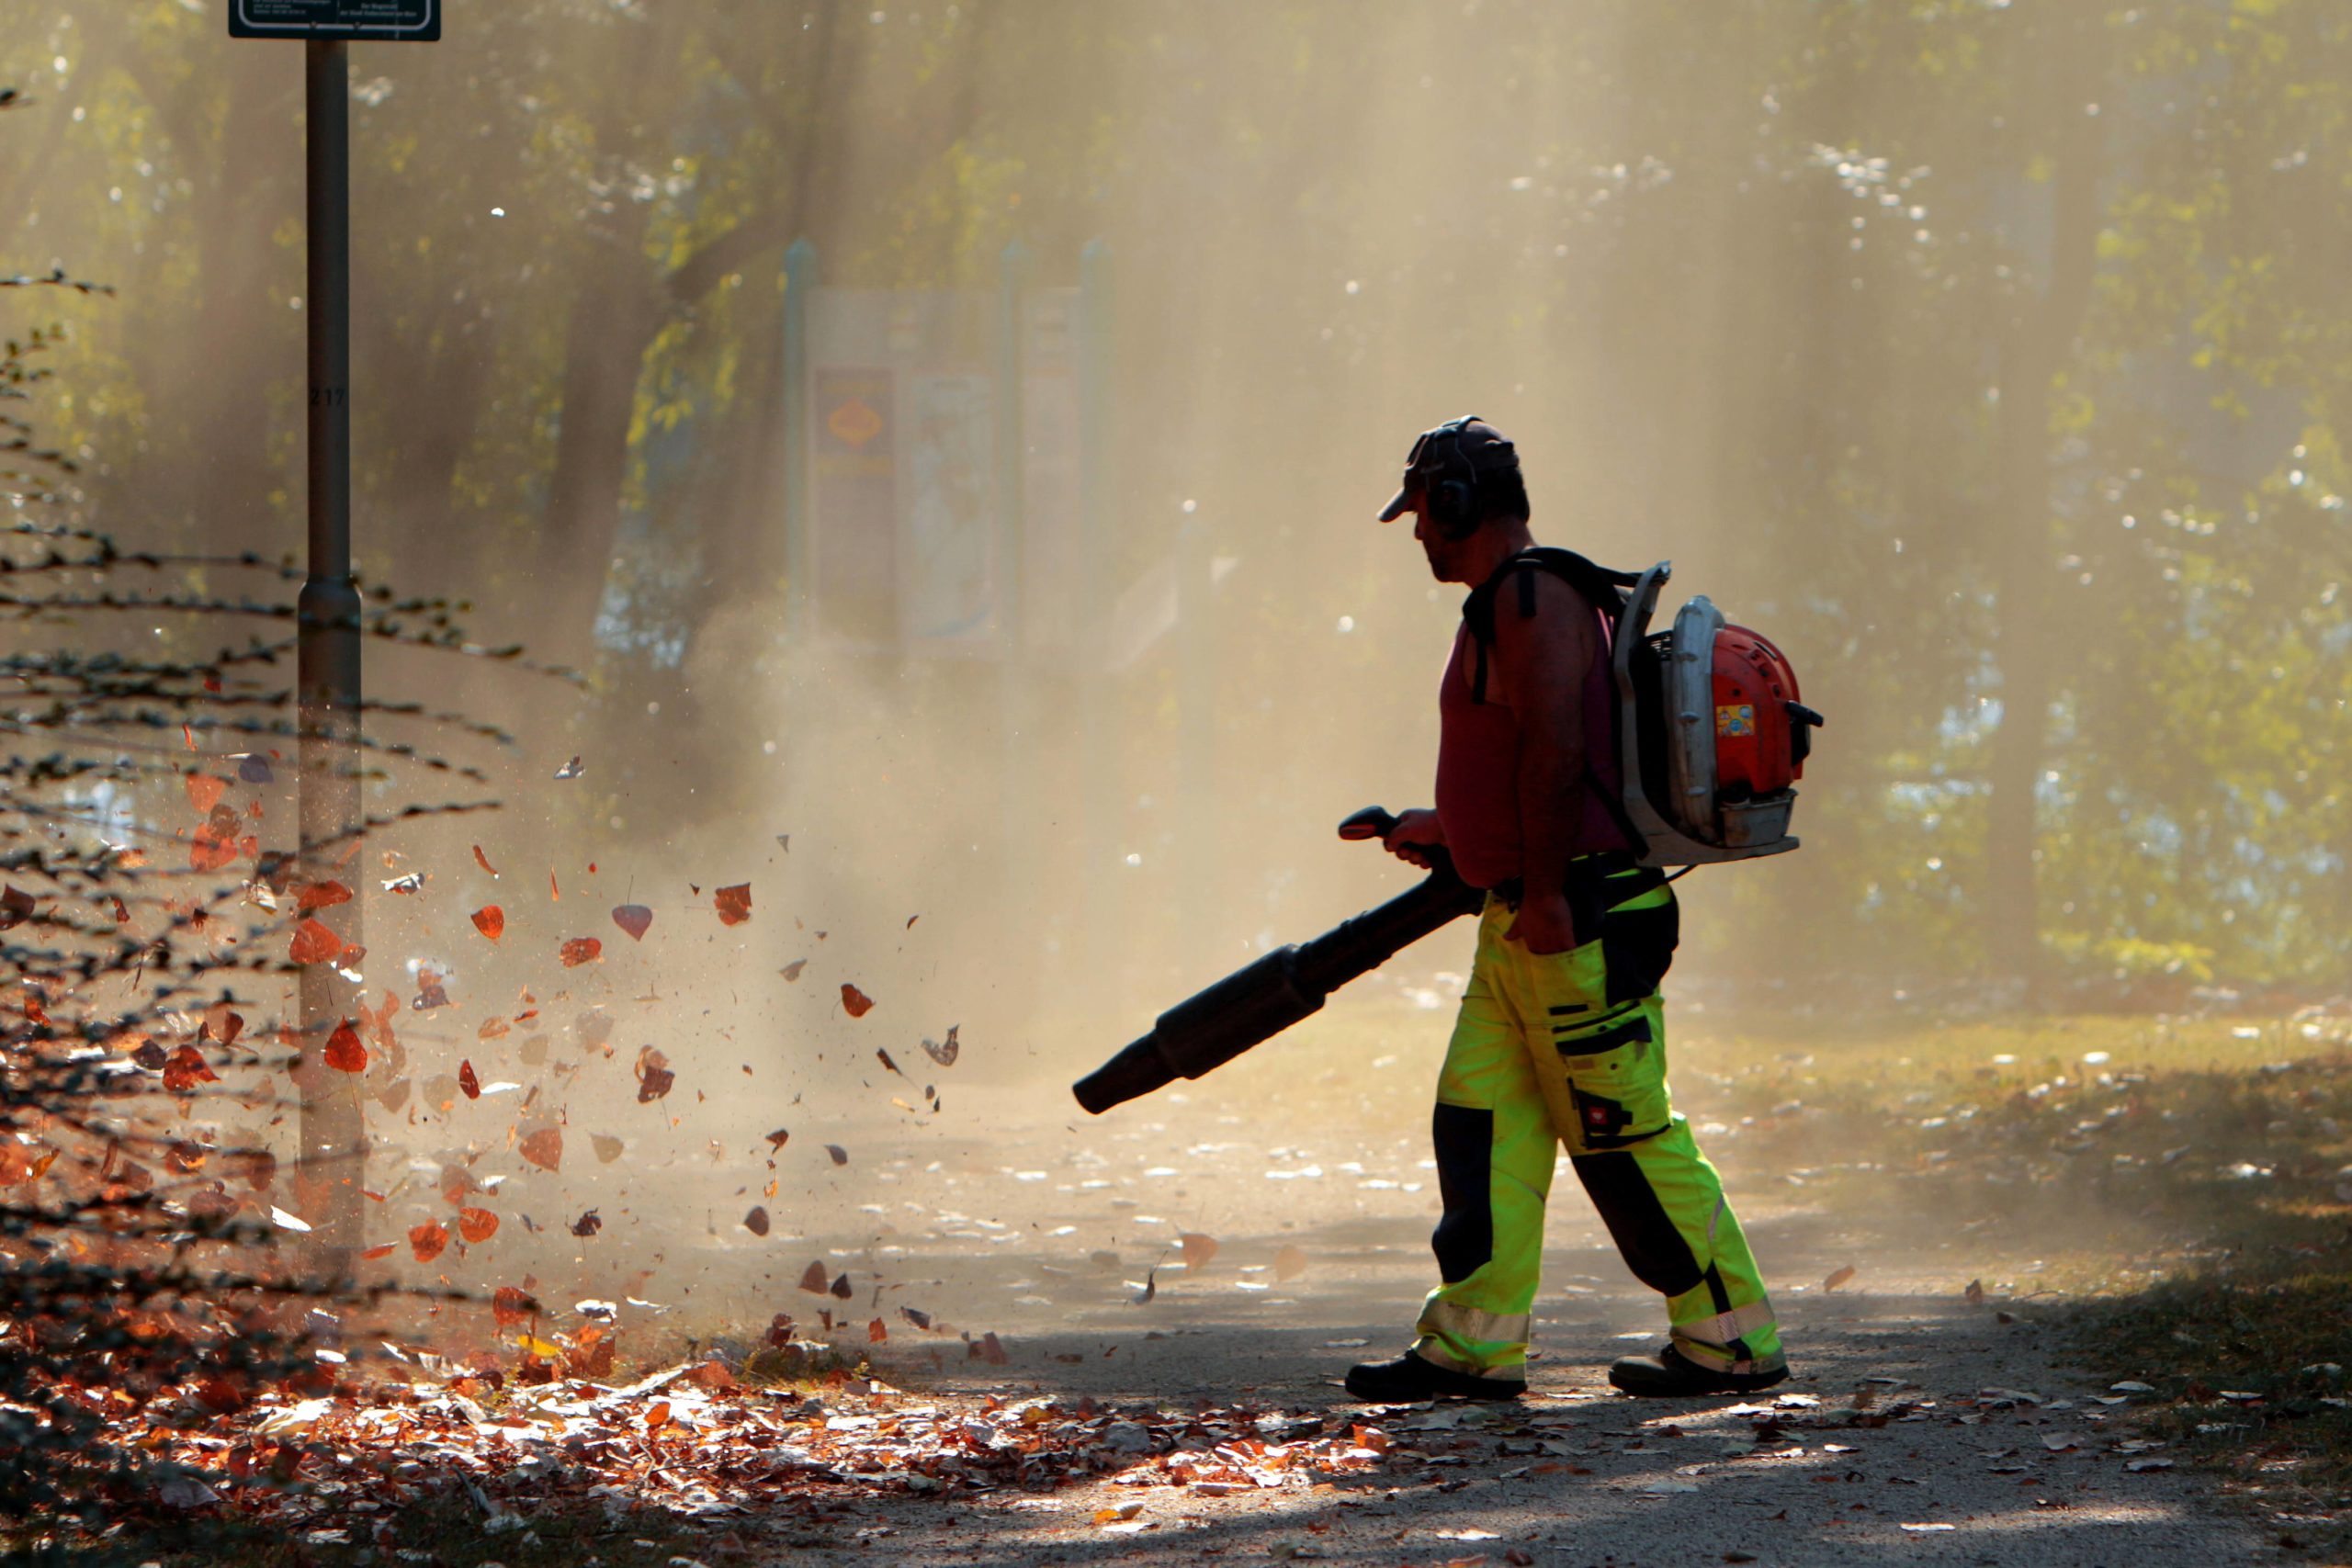 Laubbläser wirbelt neben Herbstlaub auch eine Menge Staub auf. Foto: Imago/Ralph Peters